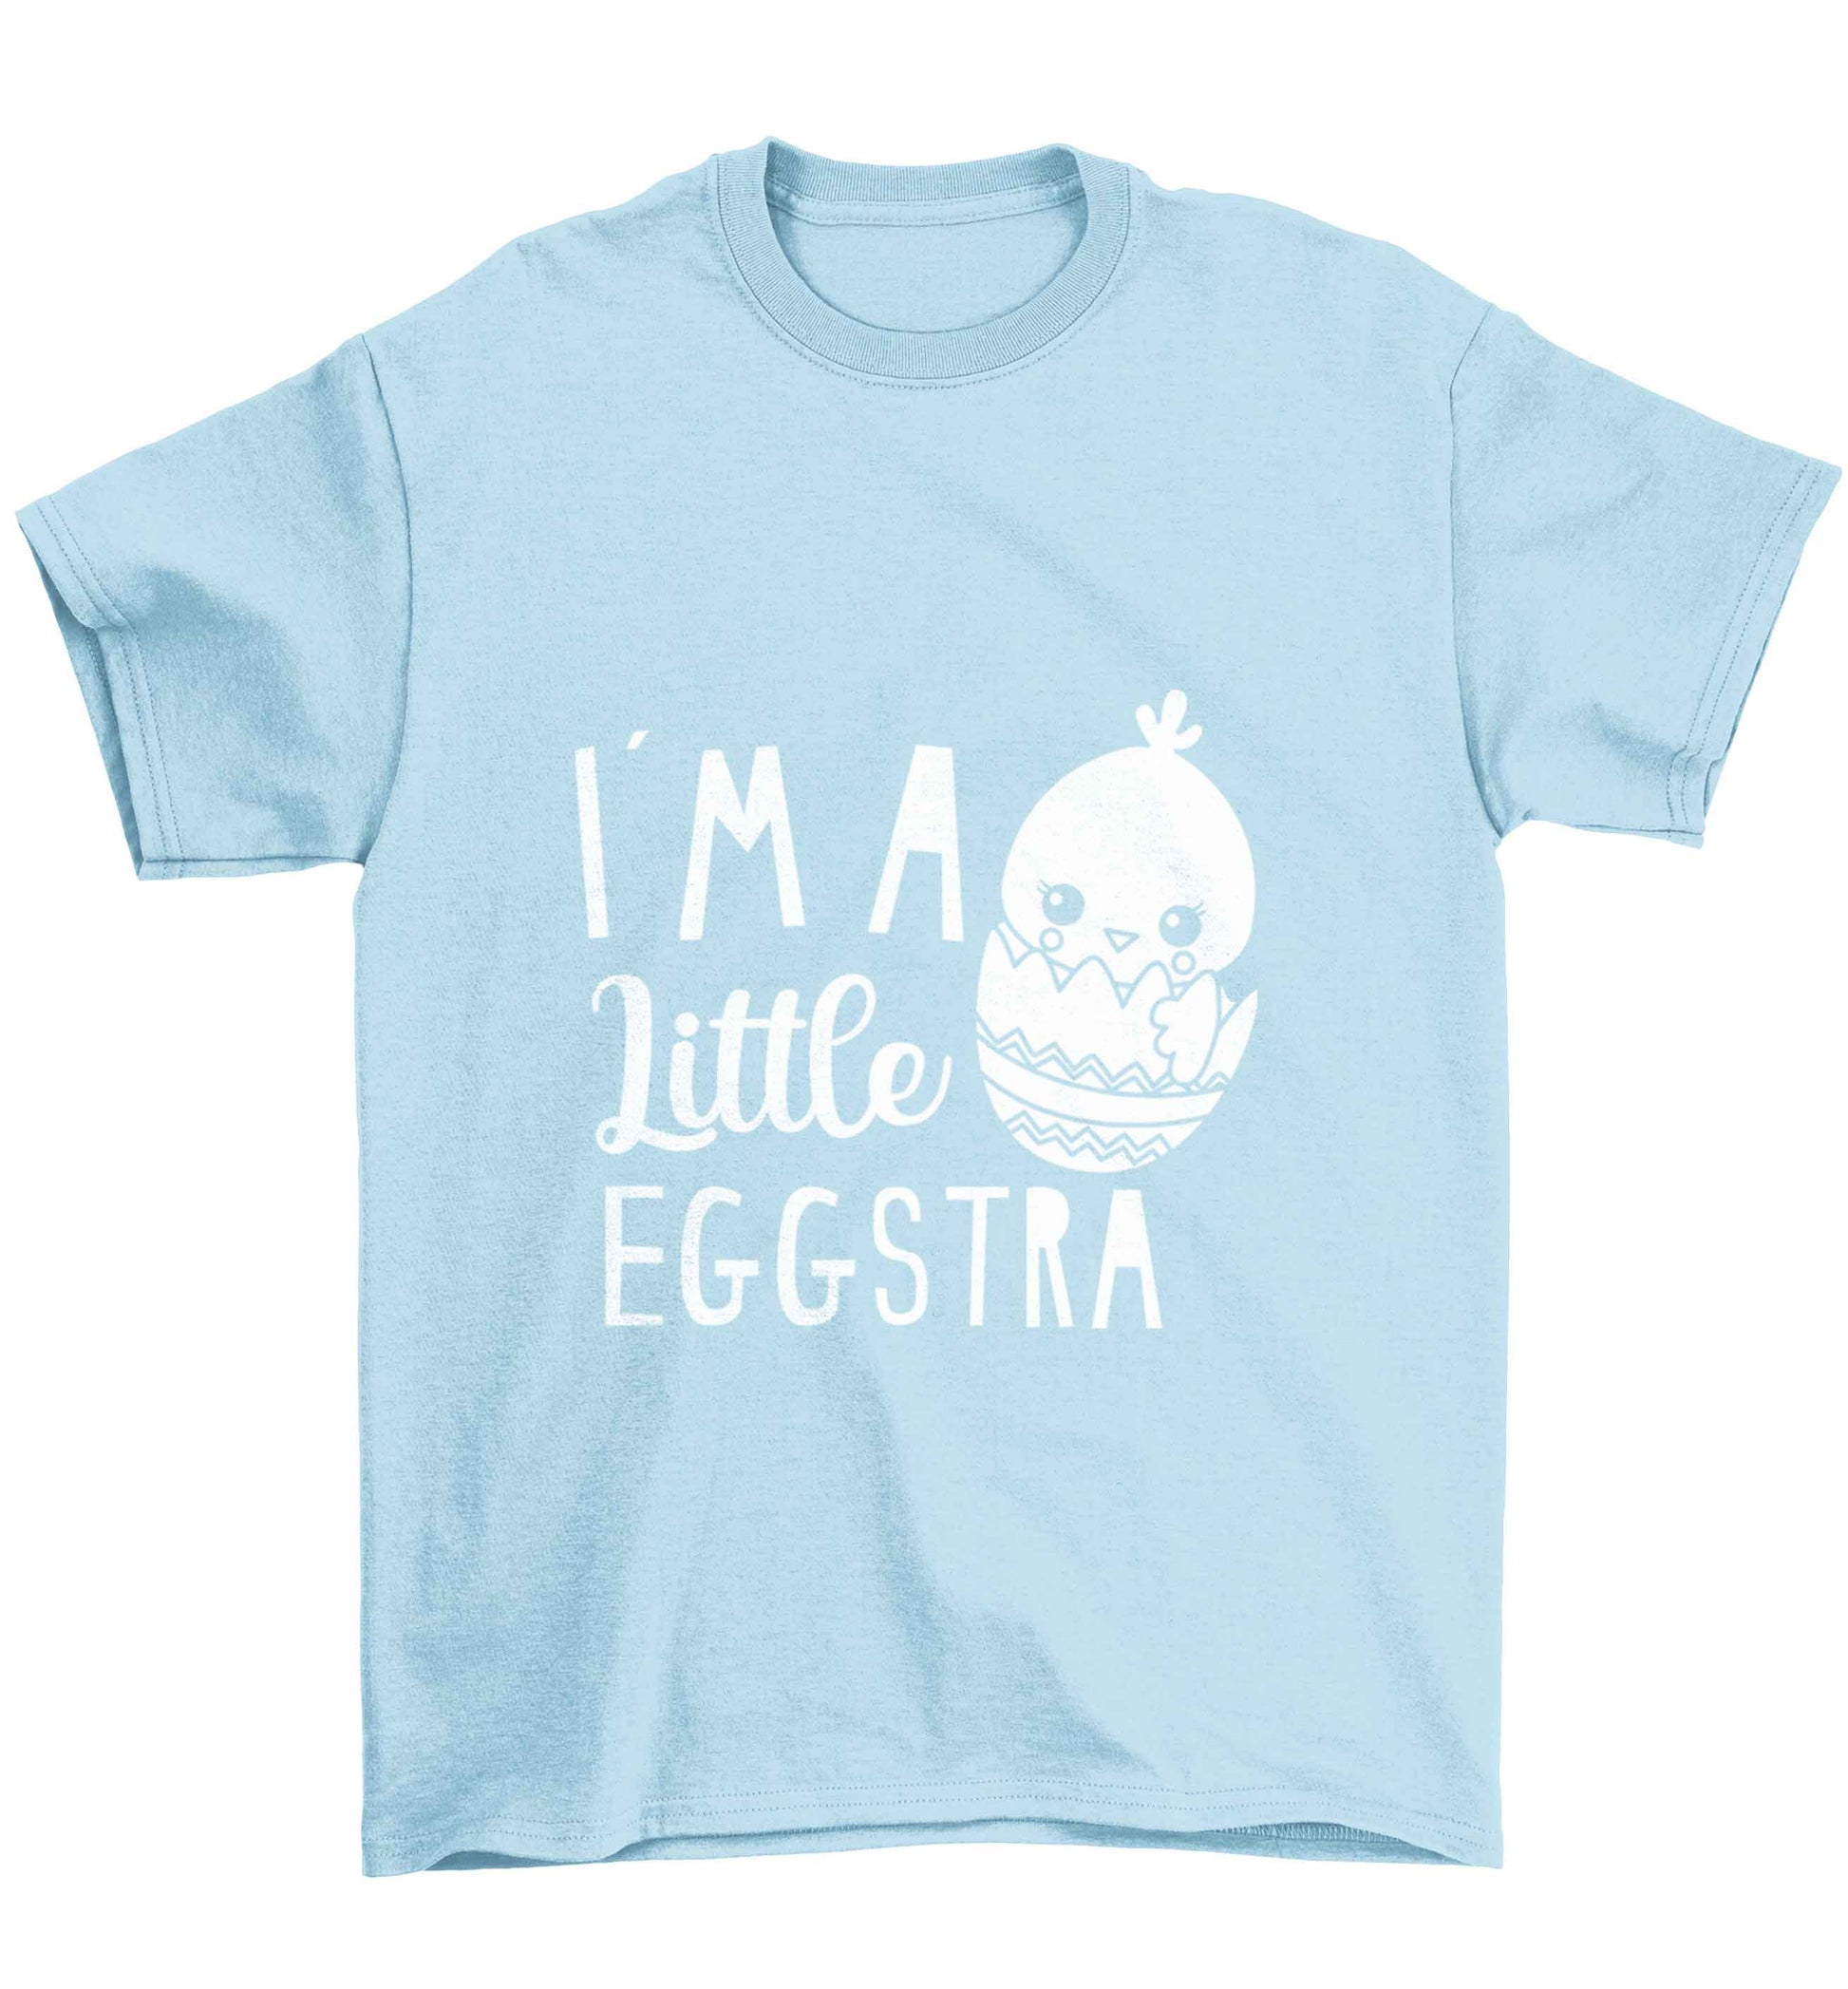 I'm a little eggstra Children's light blue Tshirt 12-13 Years